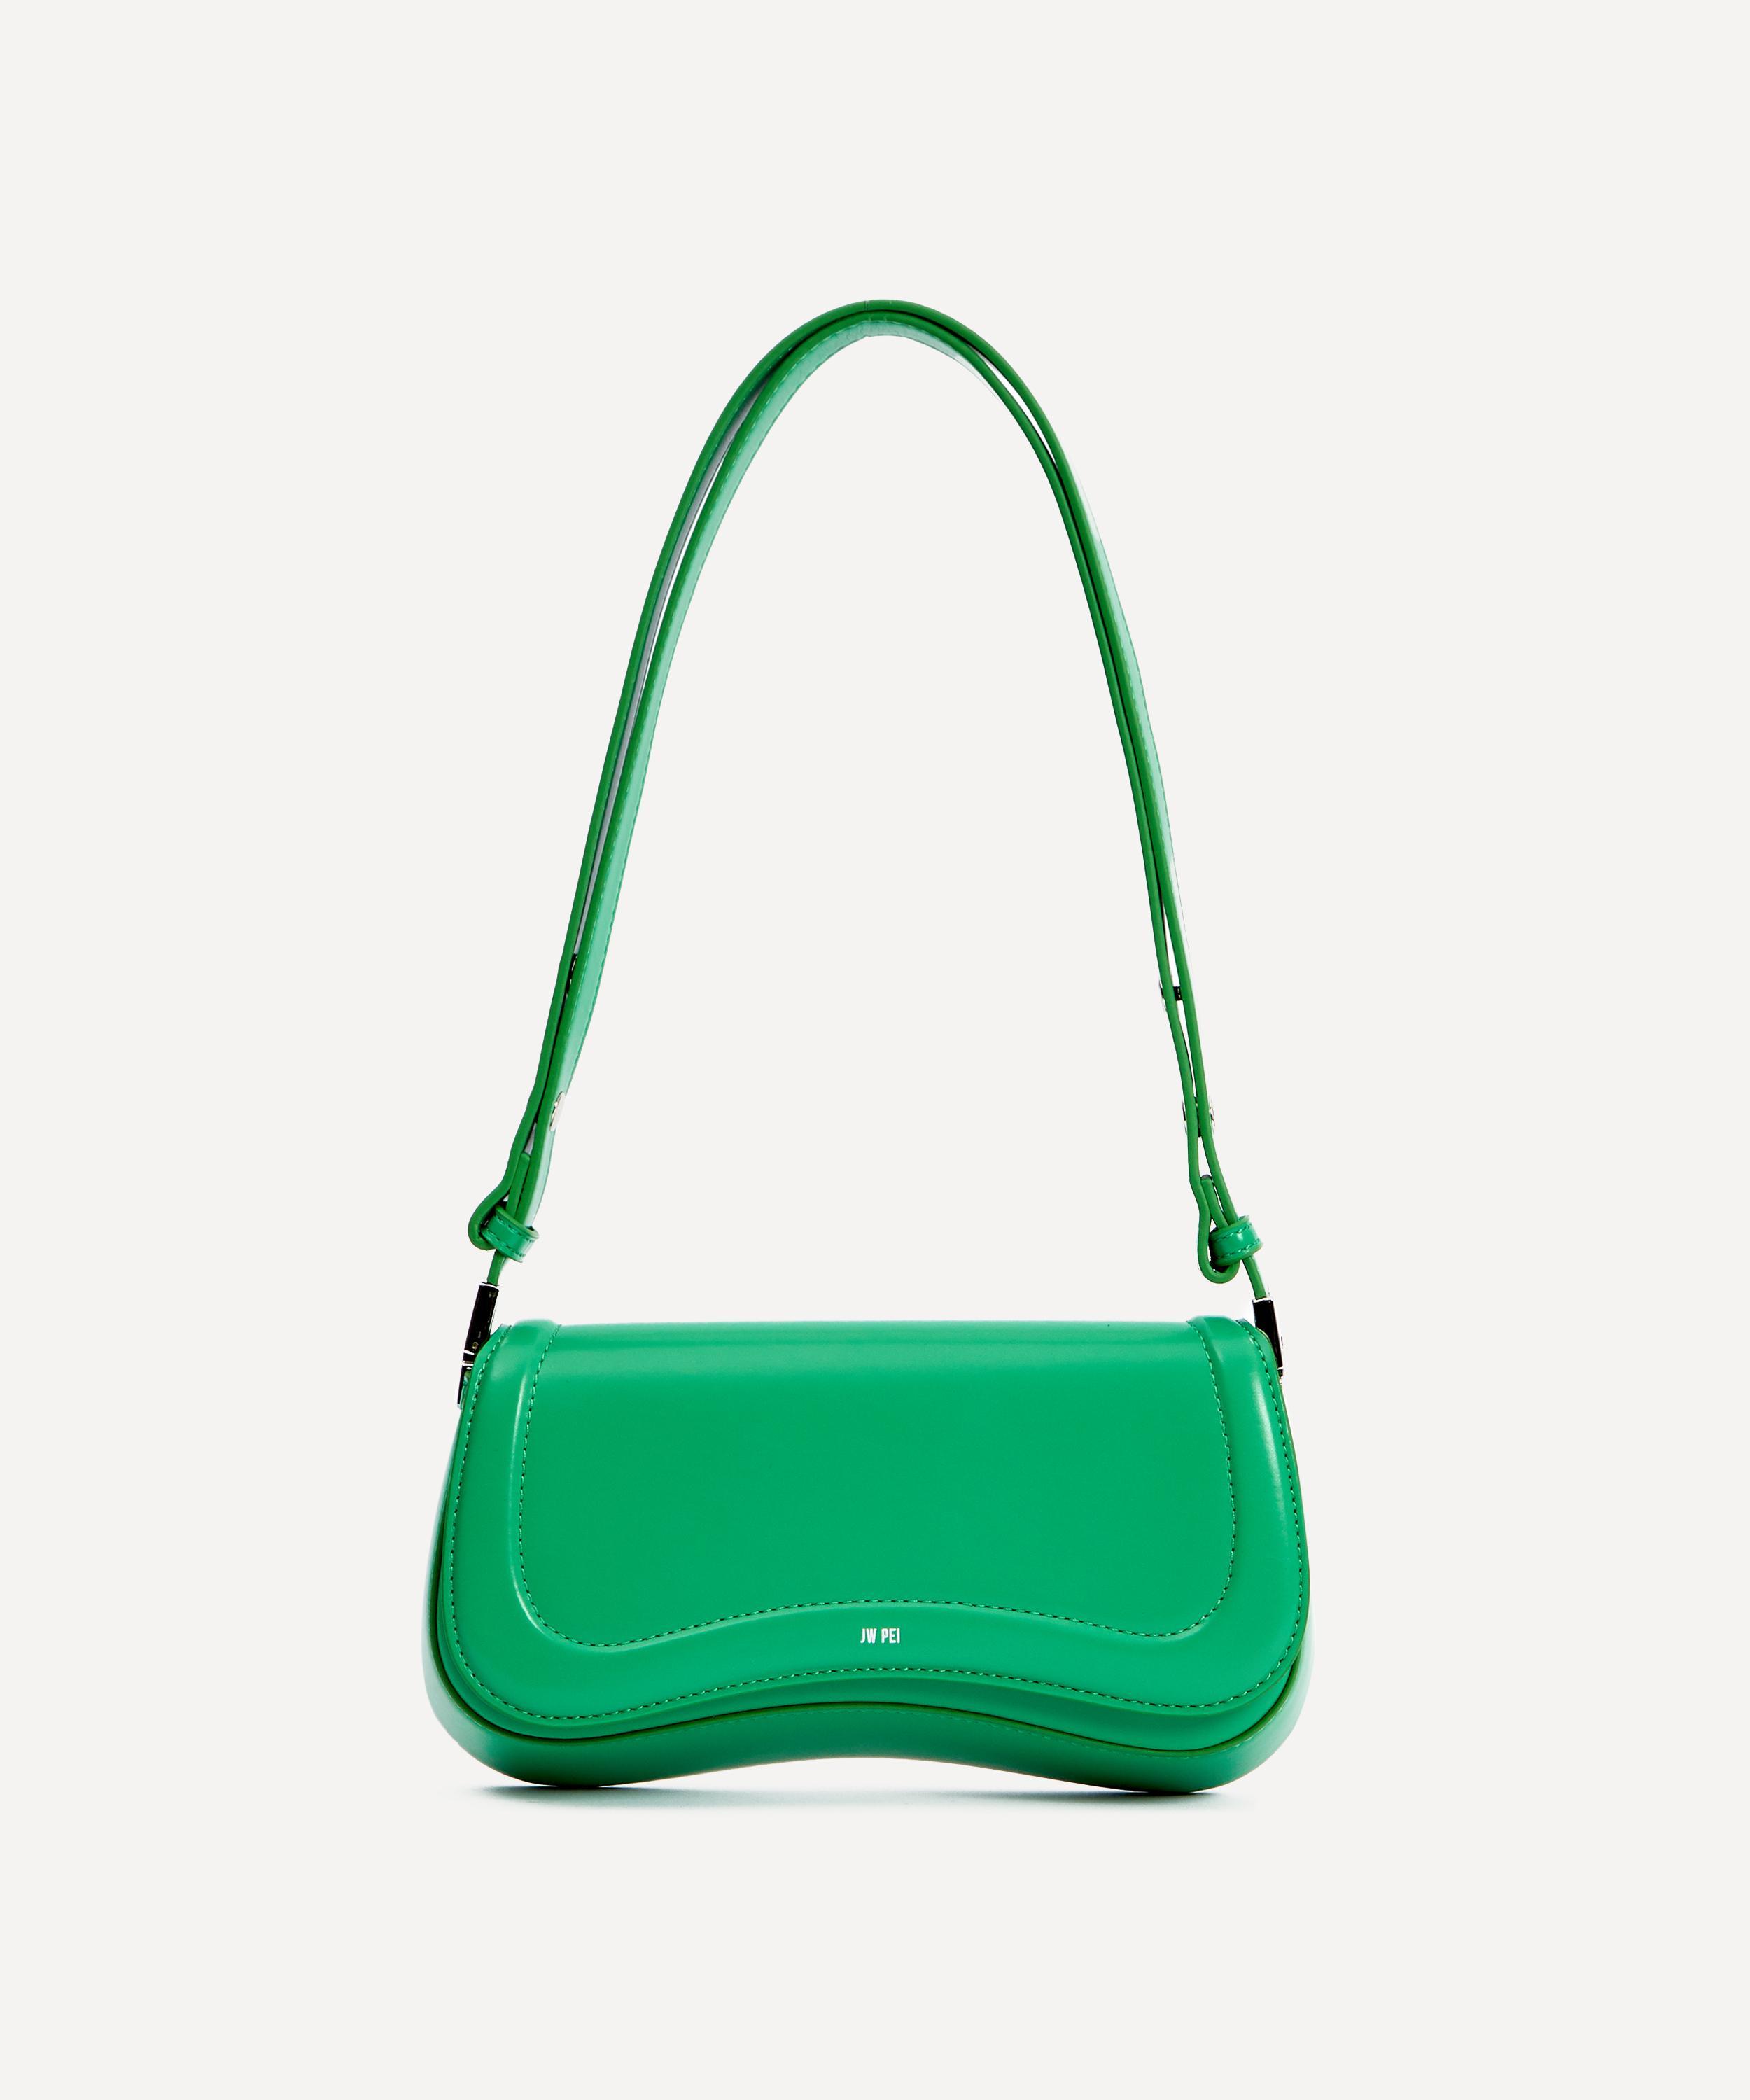 JW PEI Women's Joy Vegan Leather Baguette Bag in Green | Lyst